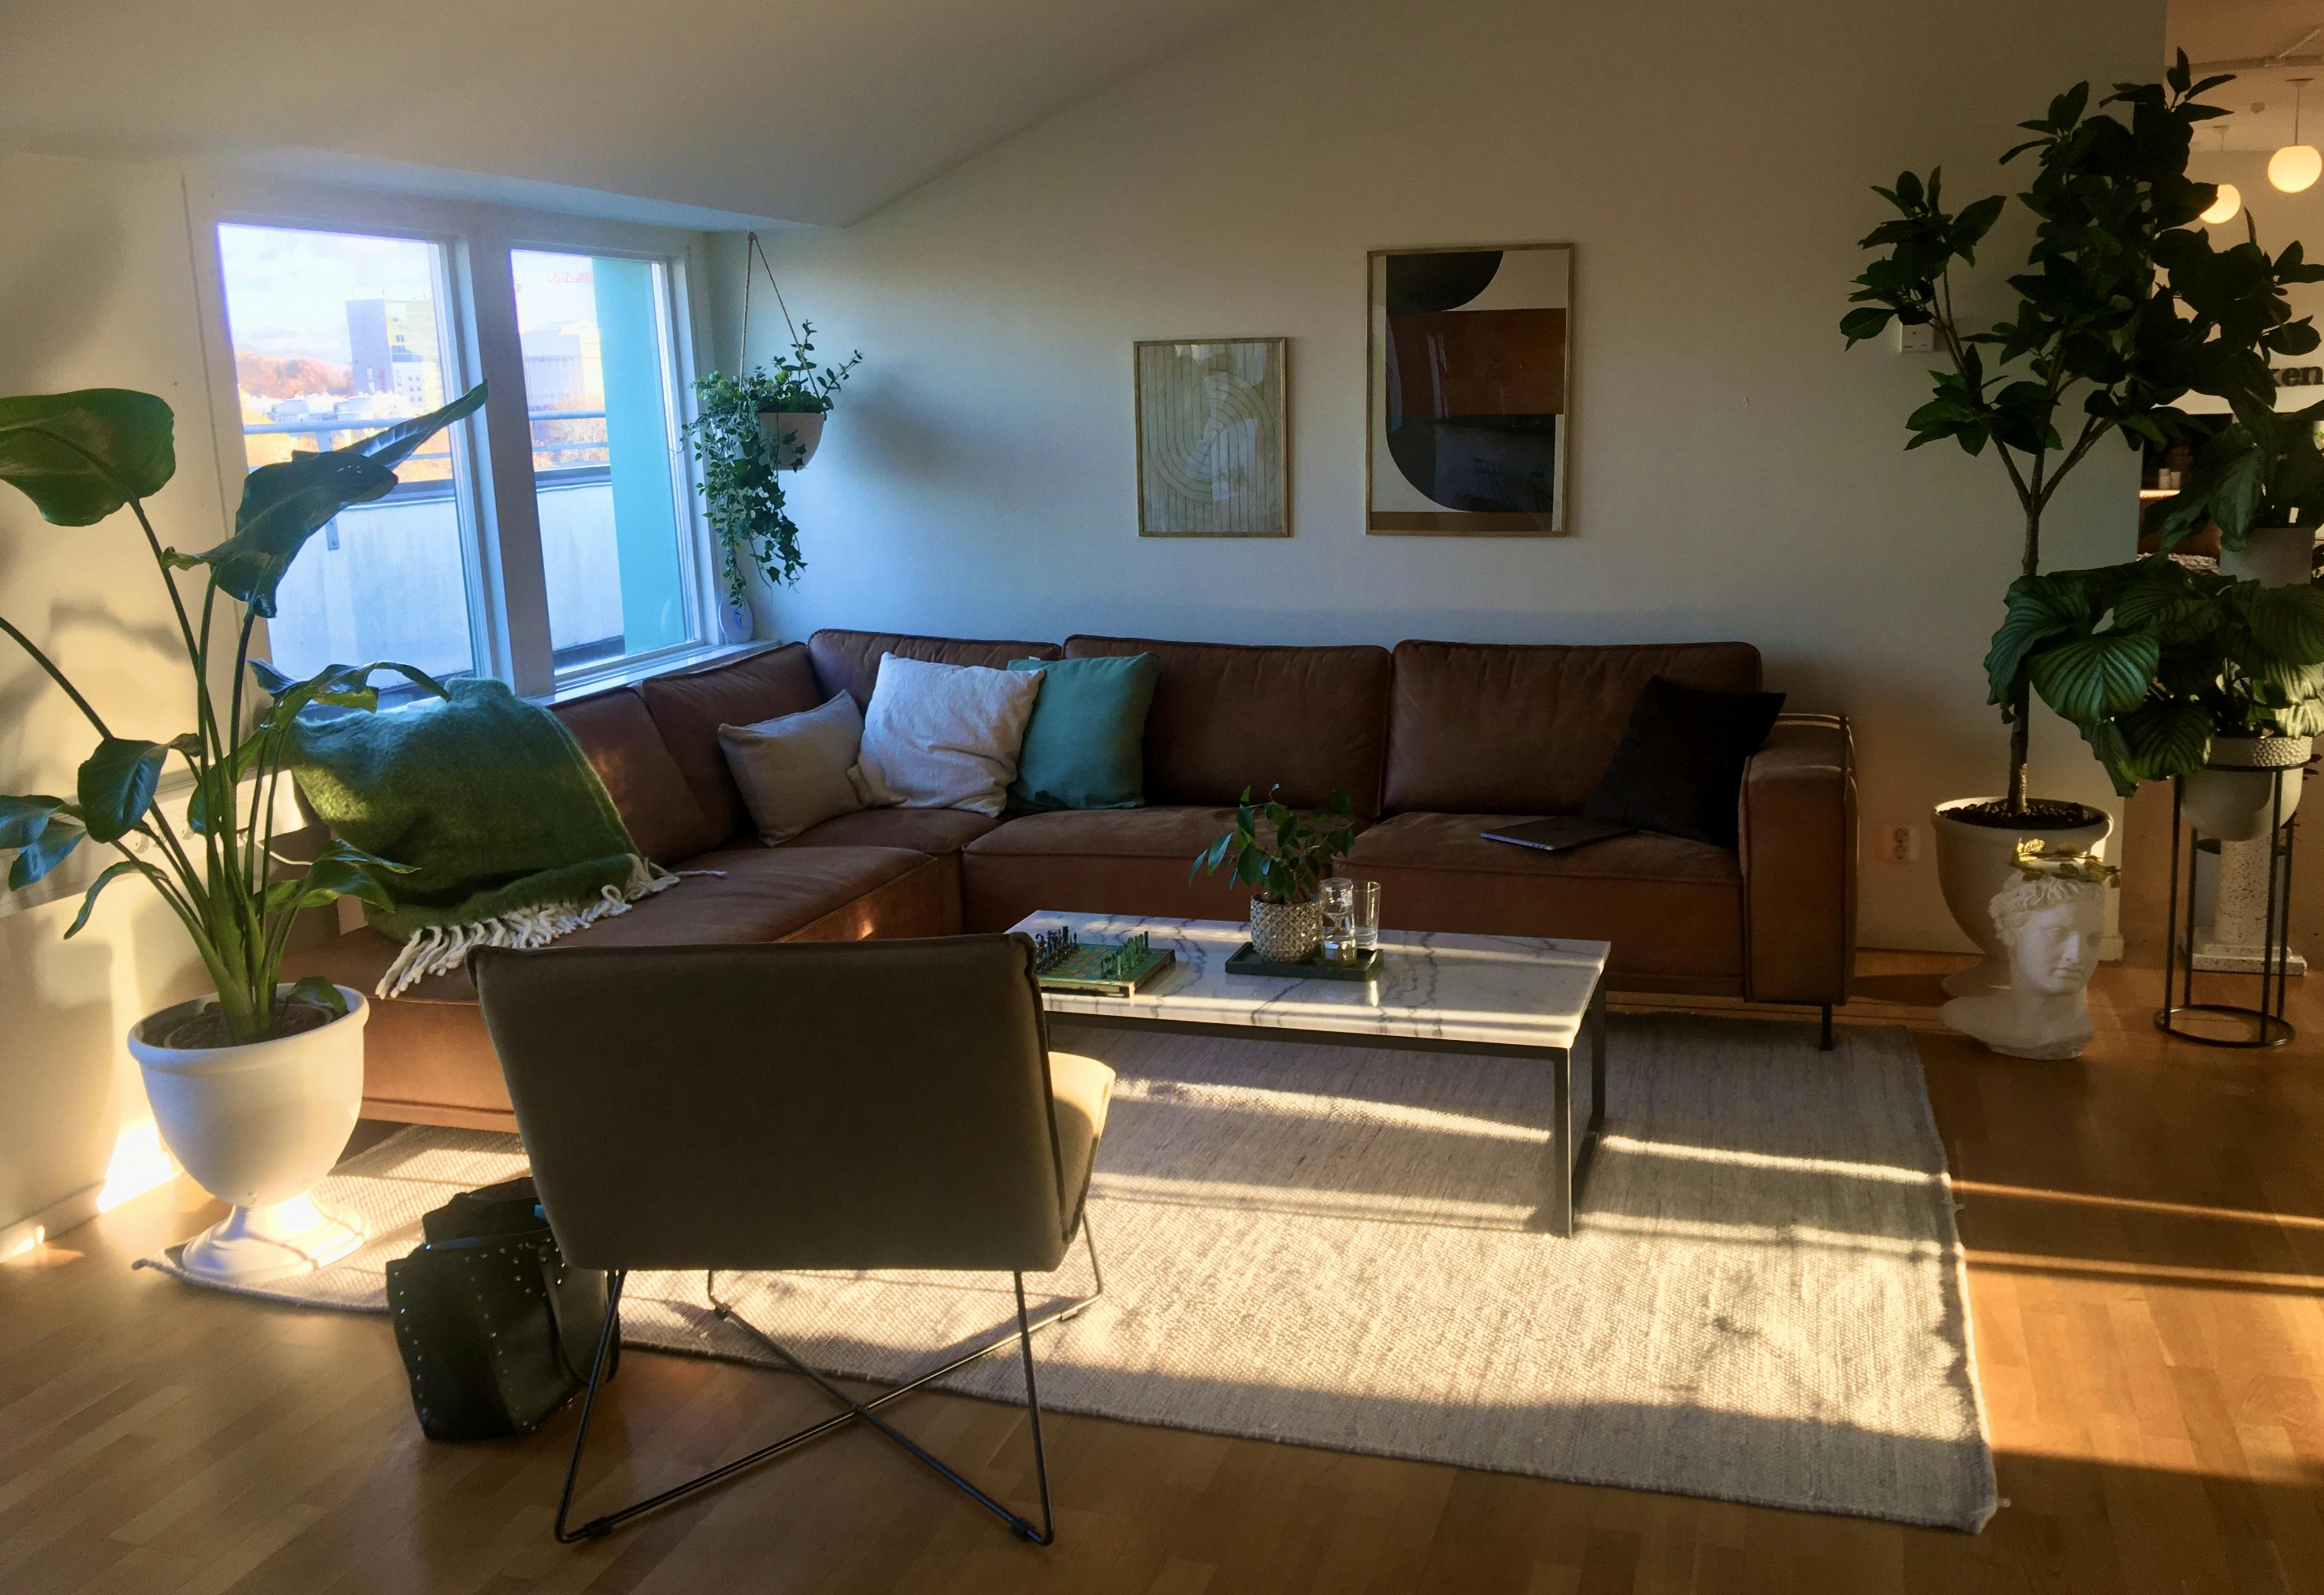 Ett mysigt rum som inrymmer en stor soffa, en fåtölj, ett soffbord, tavlor på väggen och flera växter.